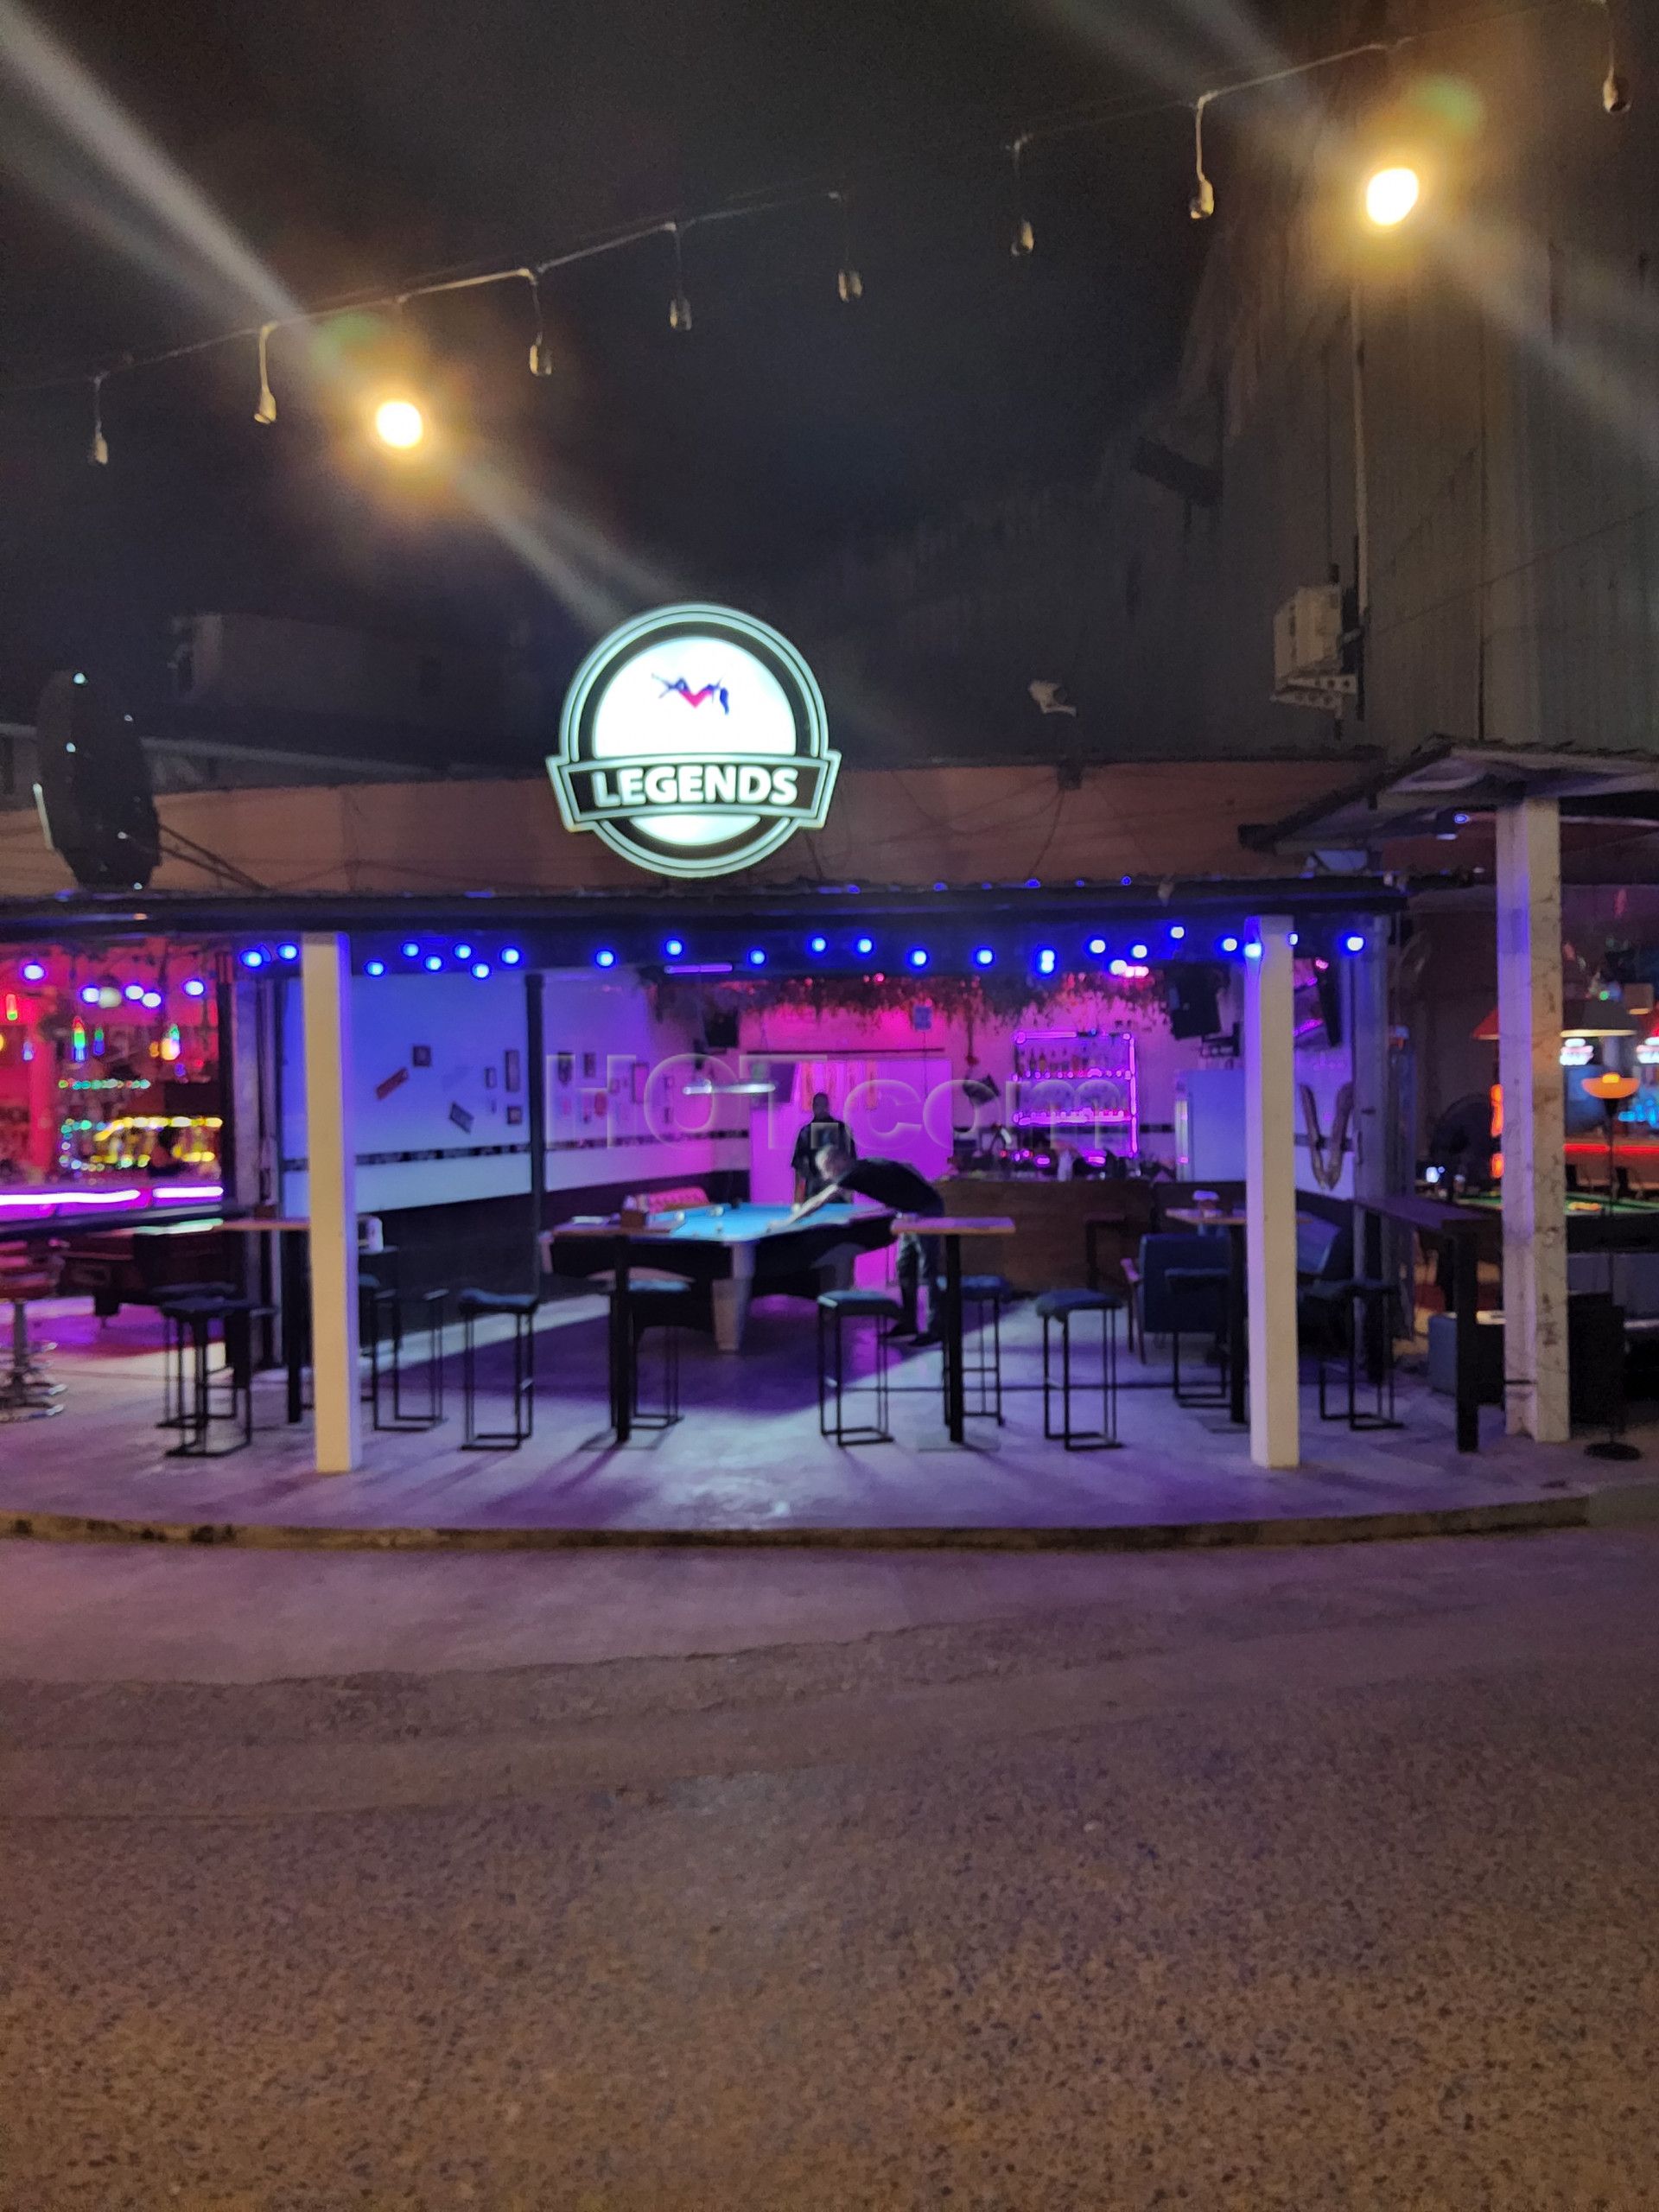 Ko Samui, Thailand Legends Bar